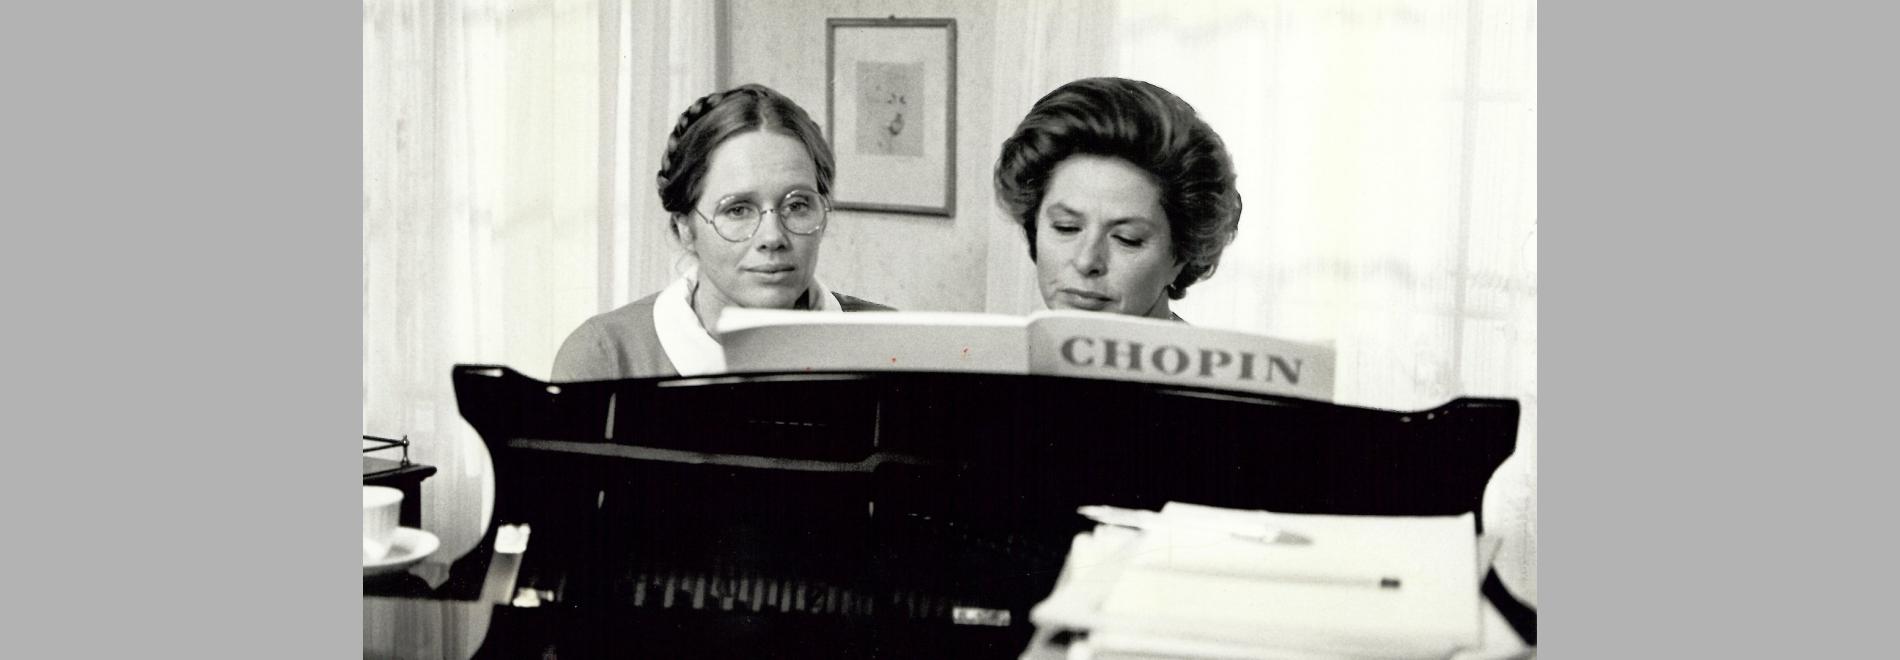 Höstsonaten / Sonata de otoño (Ingmar Bergman, 1978)